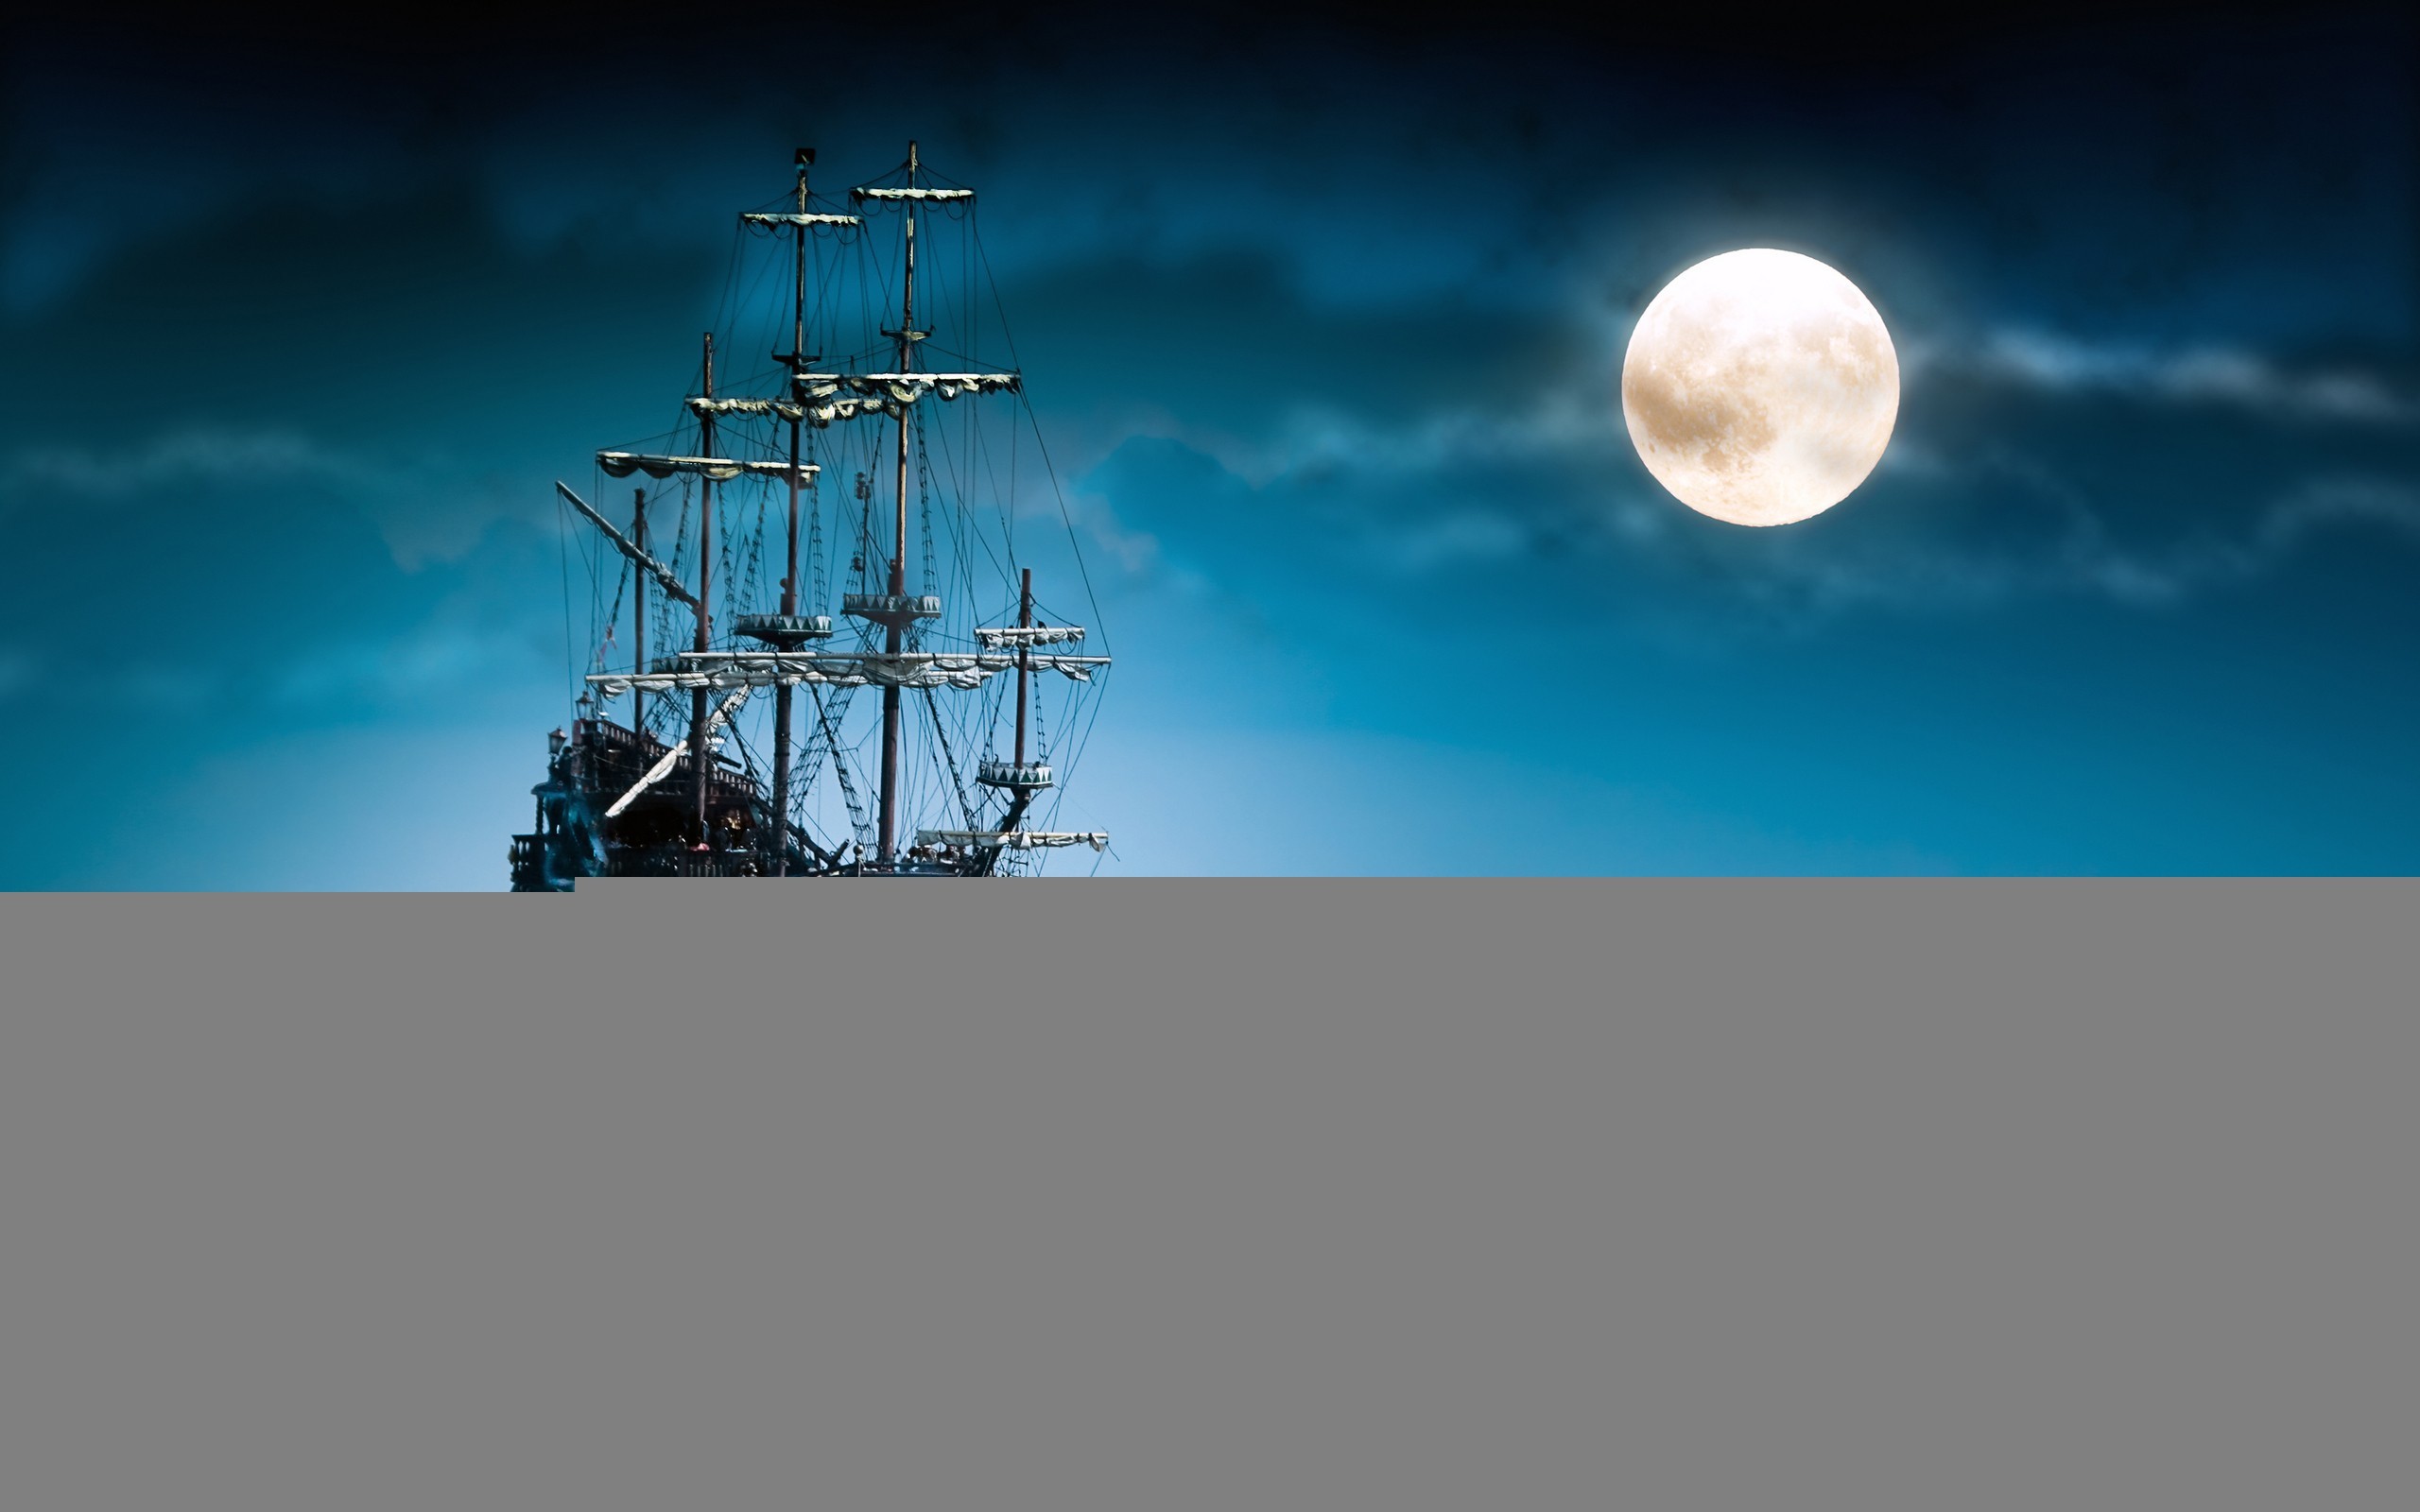 2560x1600 Ship In Full Moon Night